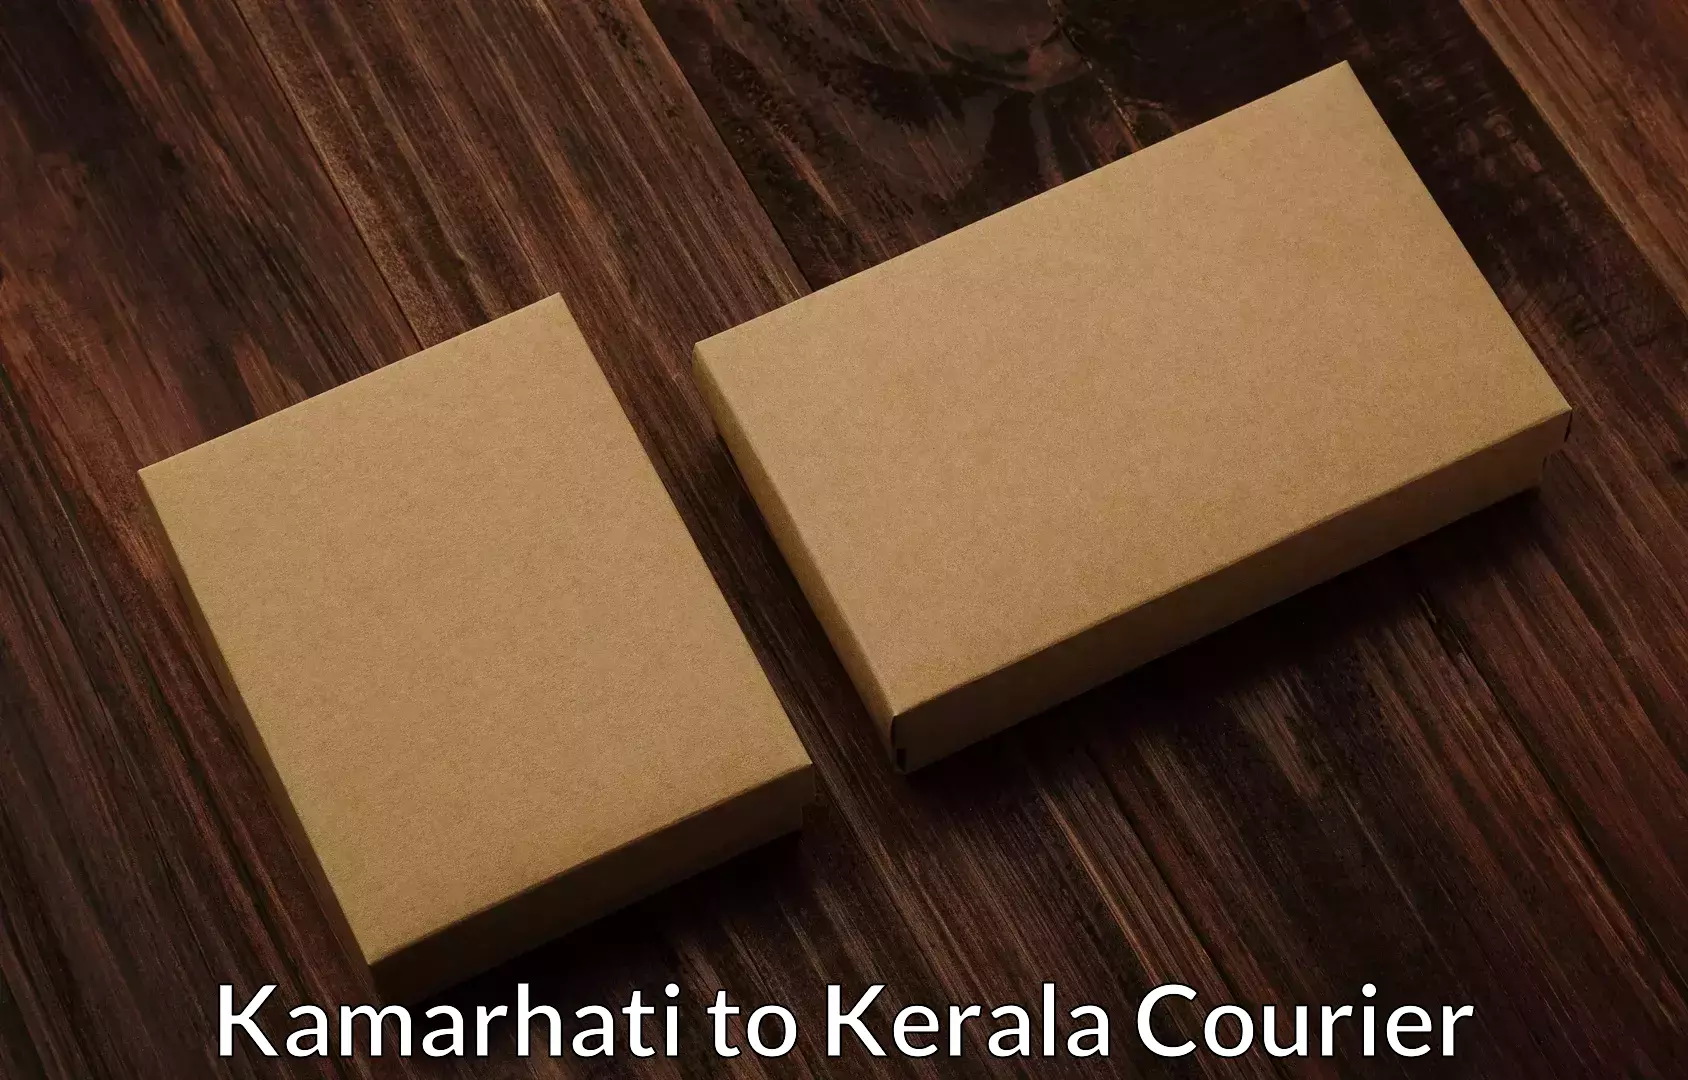 Reliable movers Kamarhati to Kerala